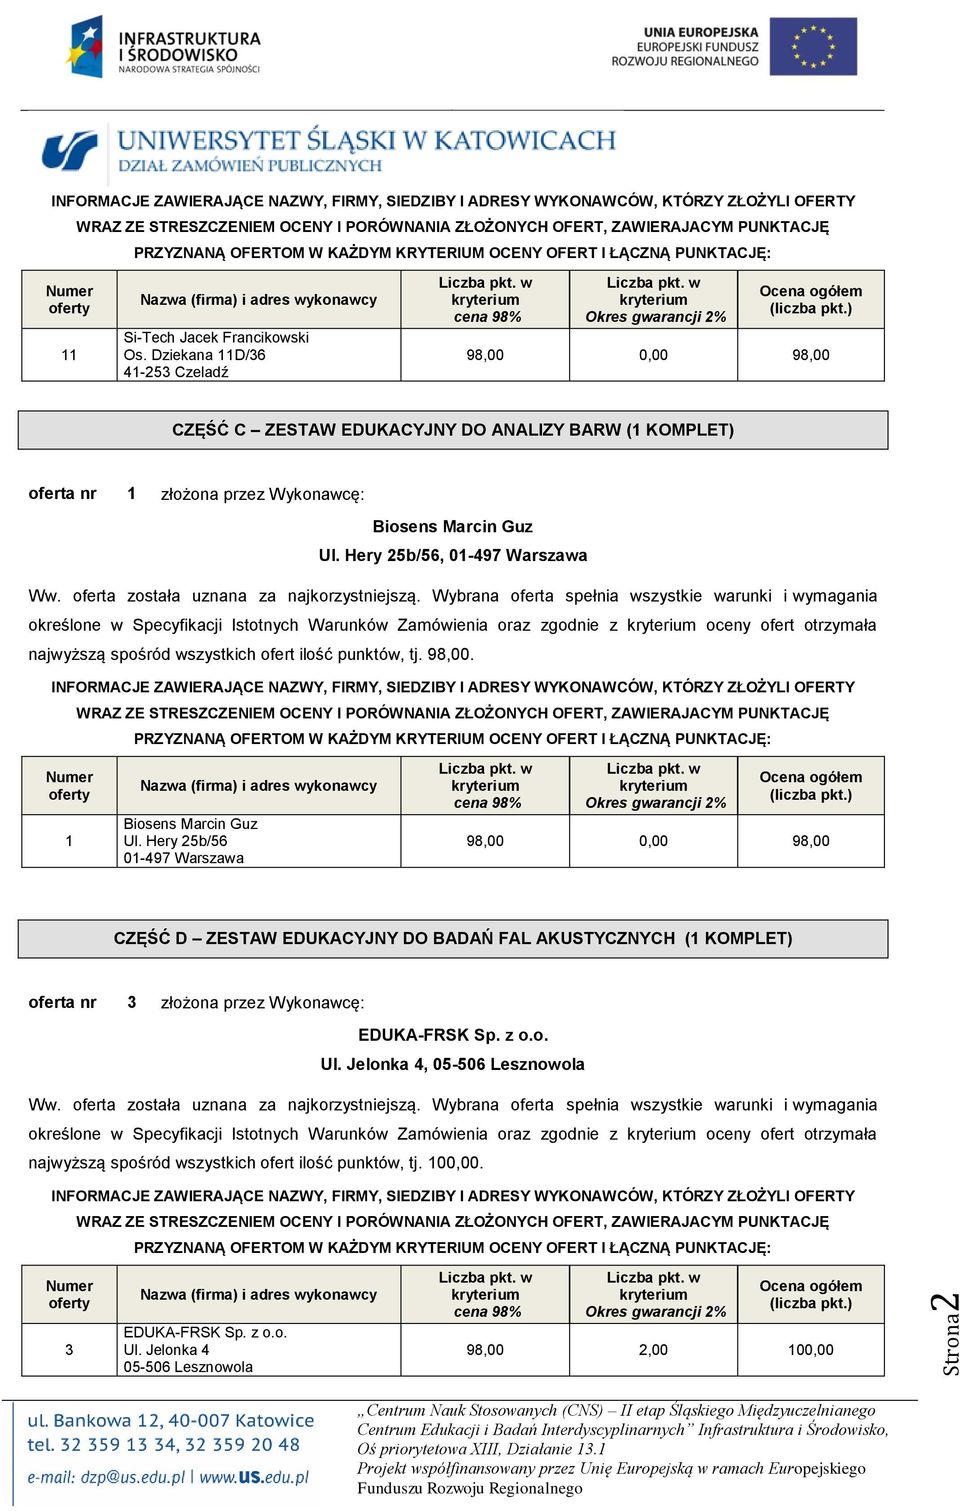 Ul. Hery 2b/6, 01-497 Warszawa określone w Specyfikacji Istotnych Warunków Zamówienia oraz zgodnie z oceny ofert otrzymała 1 Biosens